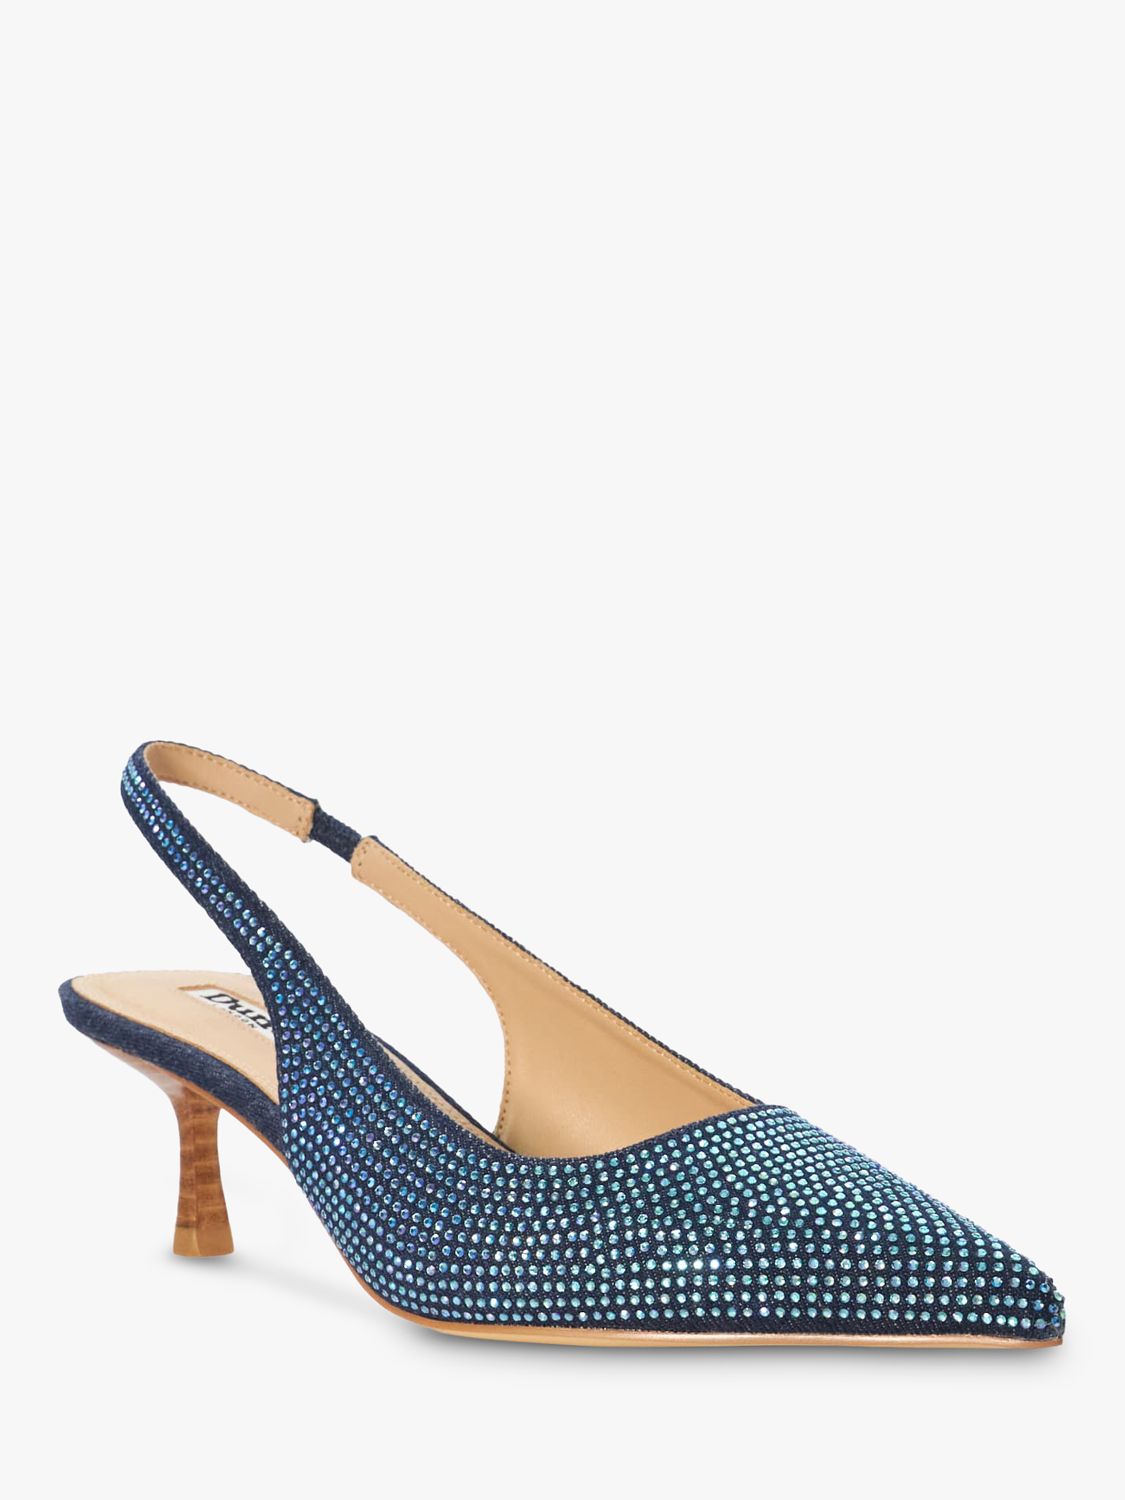 Buy Dune Colette Embellished Denim Slingback Court Shoes, Blue Online at johnlewis.com